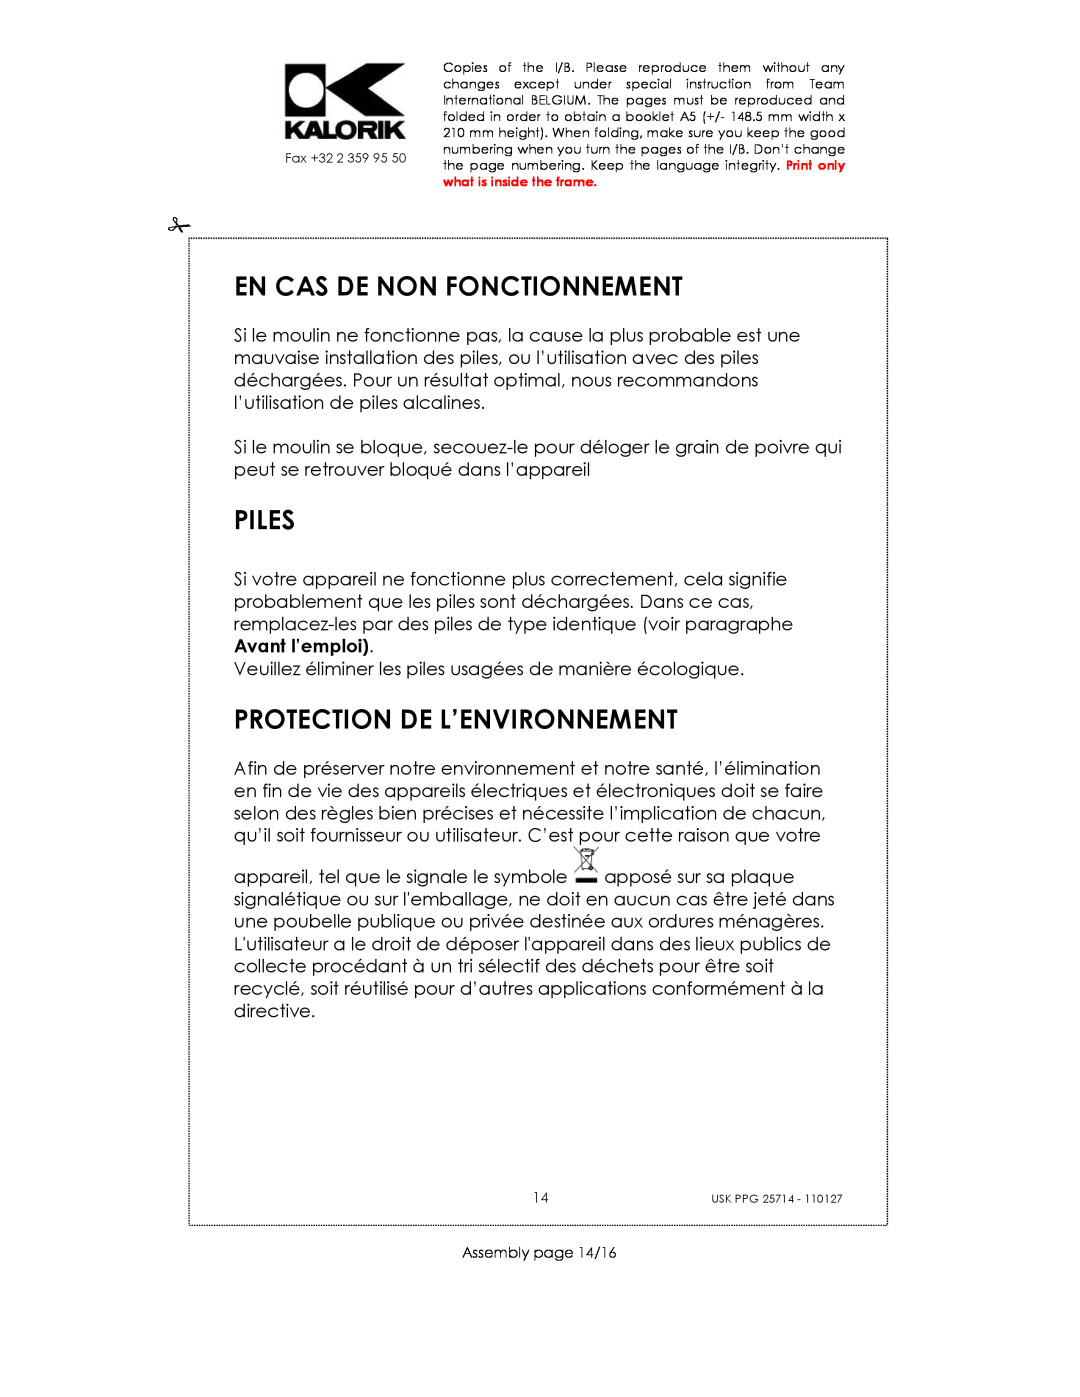 Kalorik USK PPG 25714 manual En Cas De Non Fonctionnement, Piles, Protection De L’Environnement 